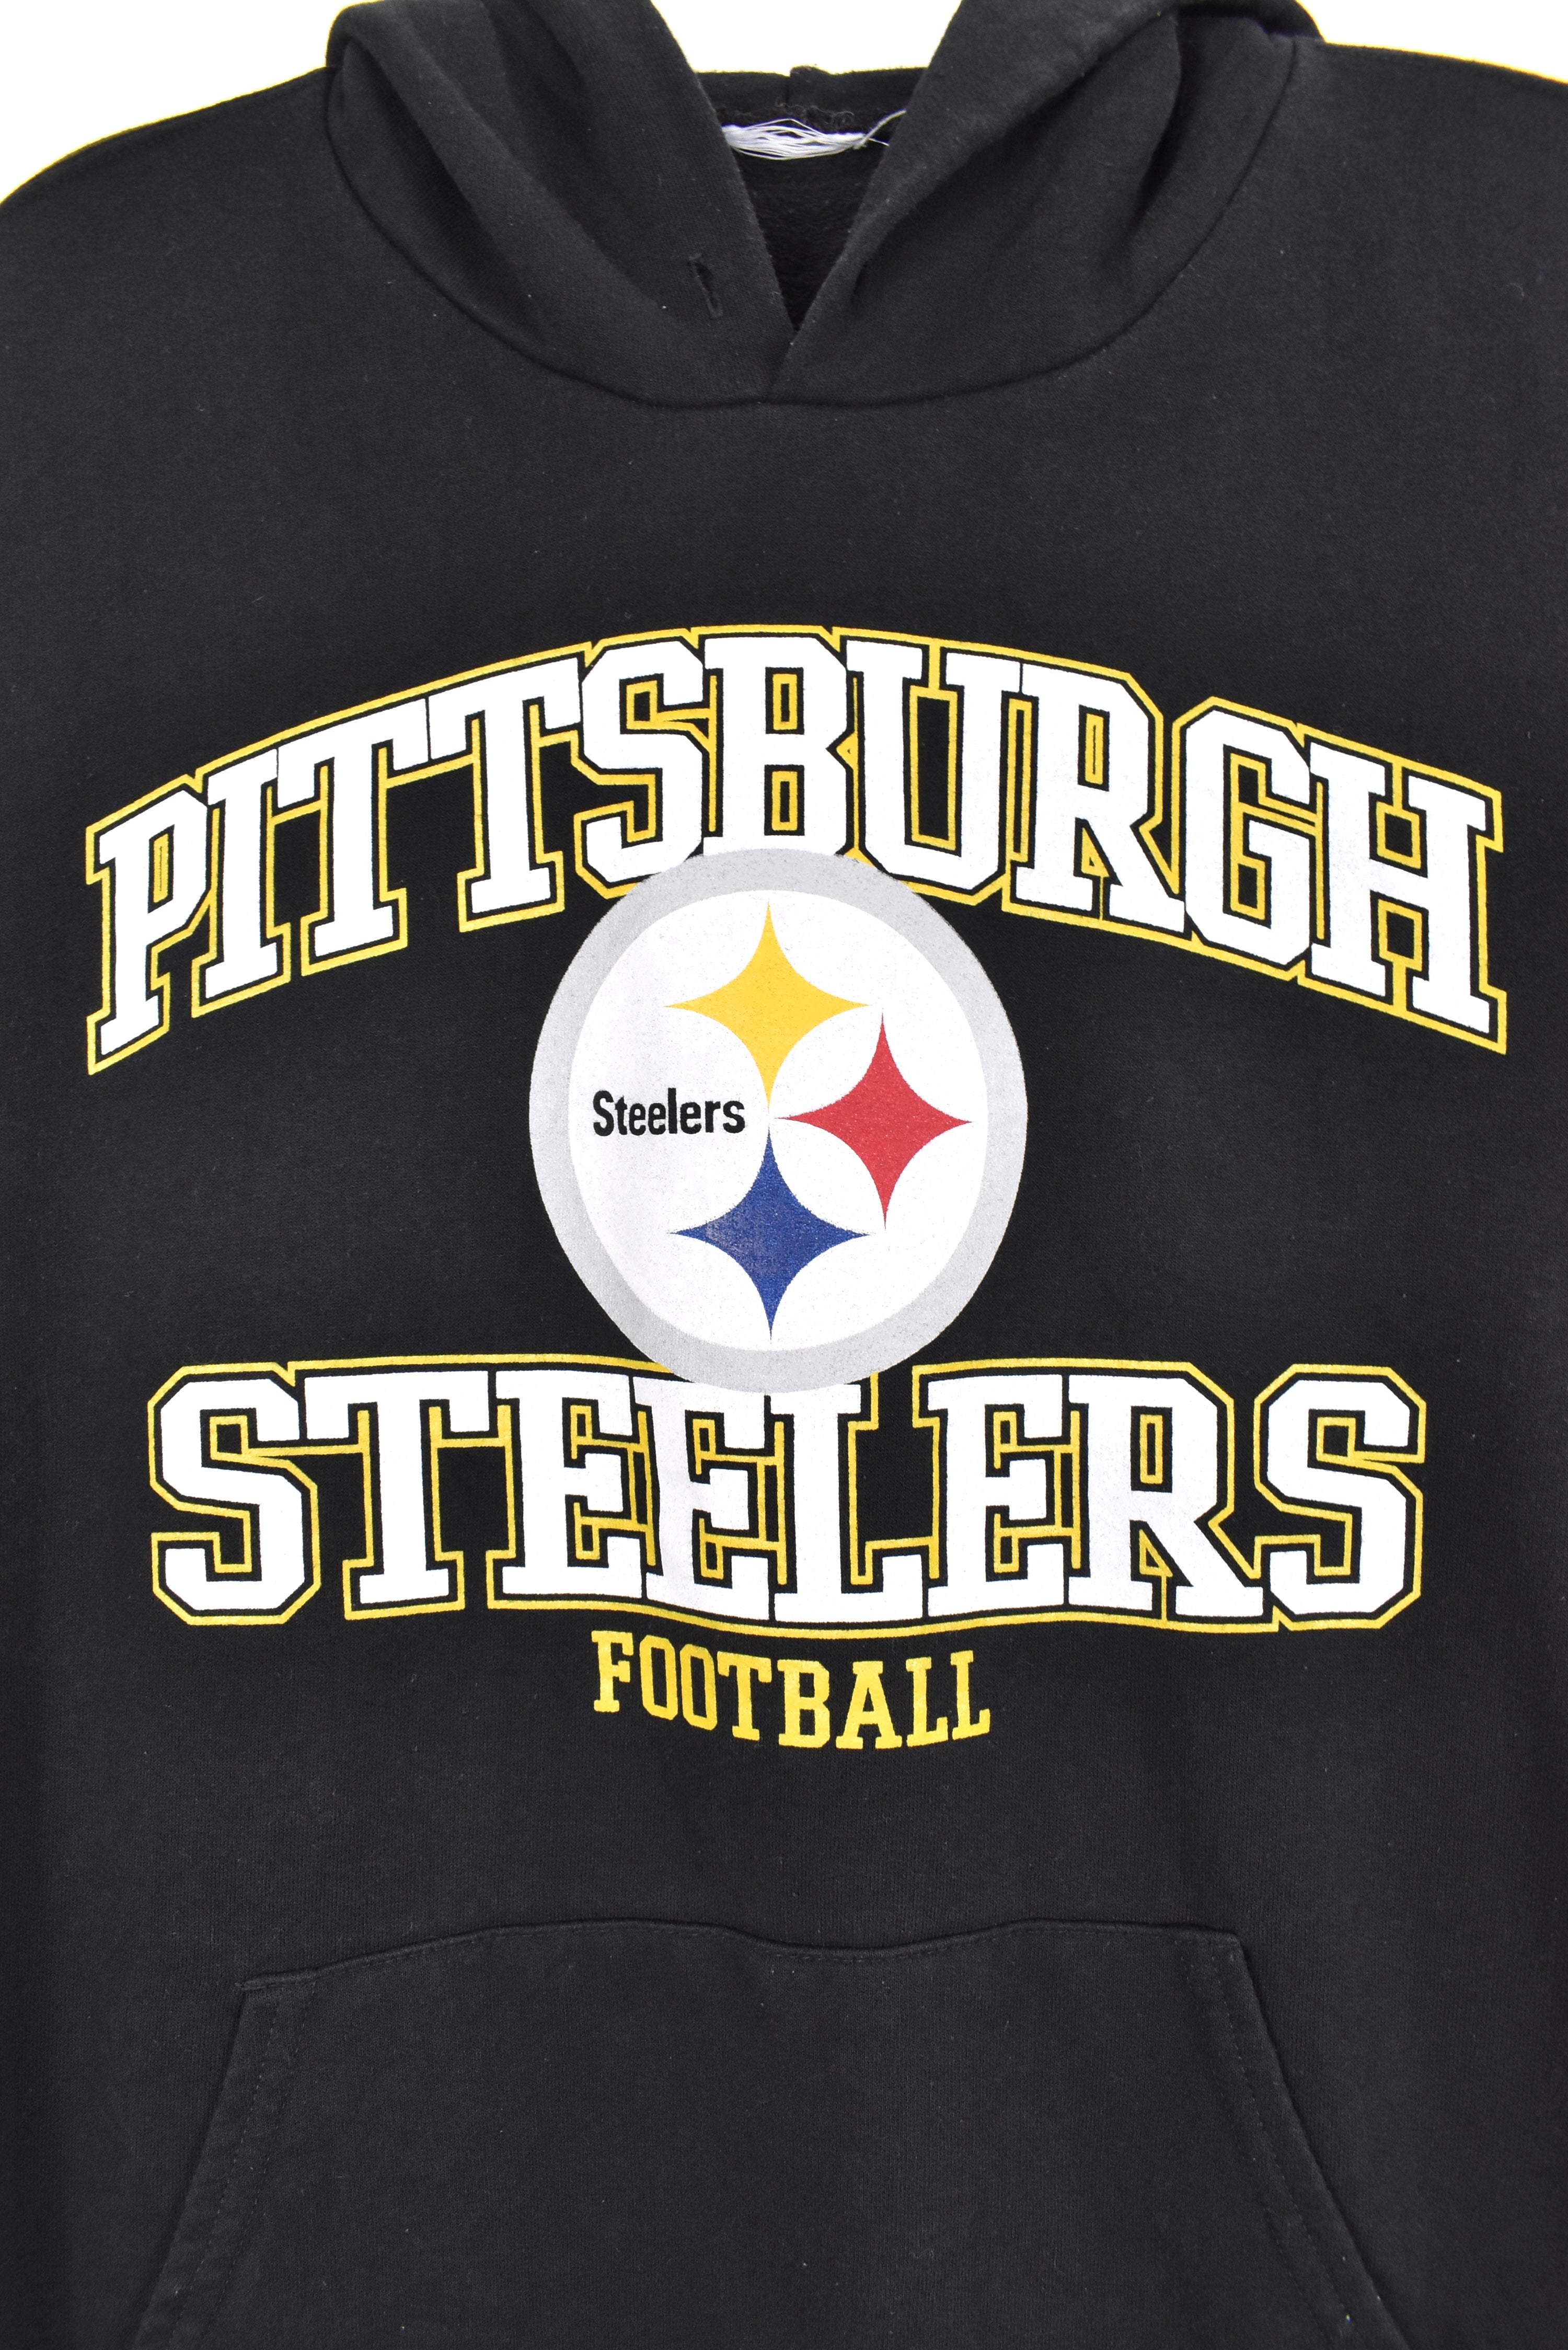 Vintage Pittsburgh Steelers hoodie, NFL black graphic sweatshirt - AU XL PRO SPORT